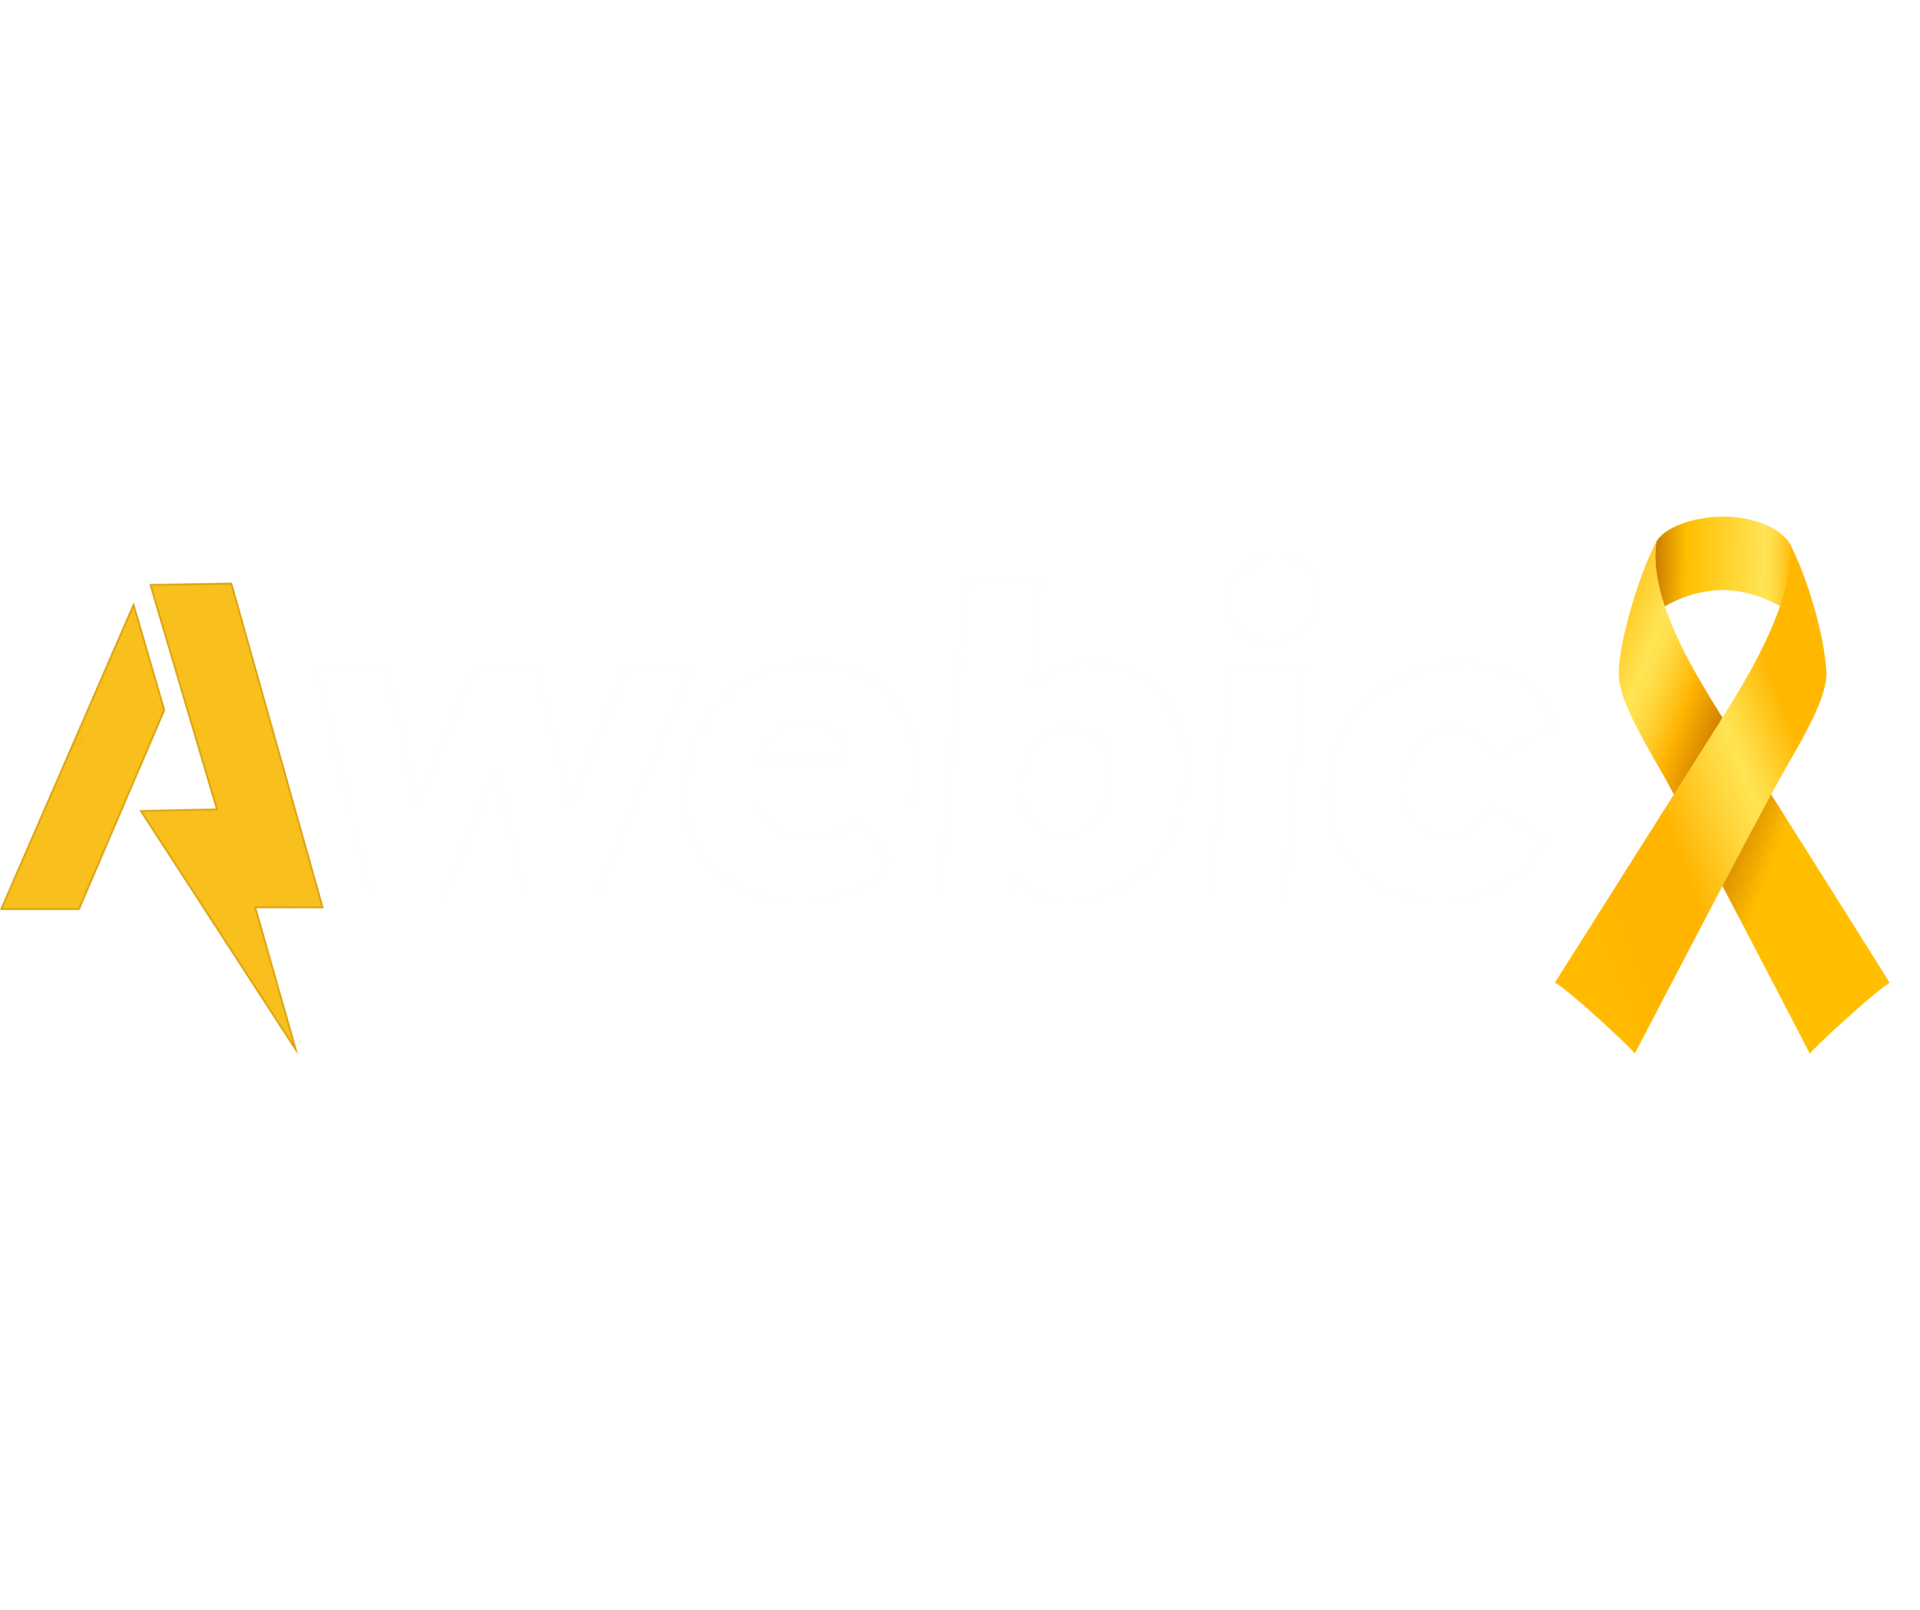 Awebic | Histórias que Inspiram